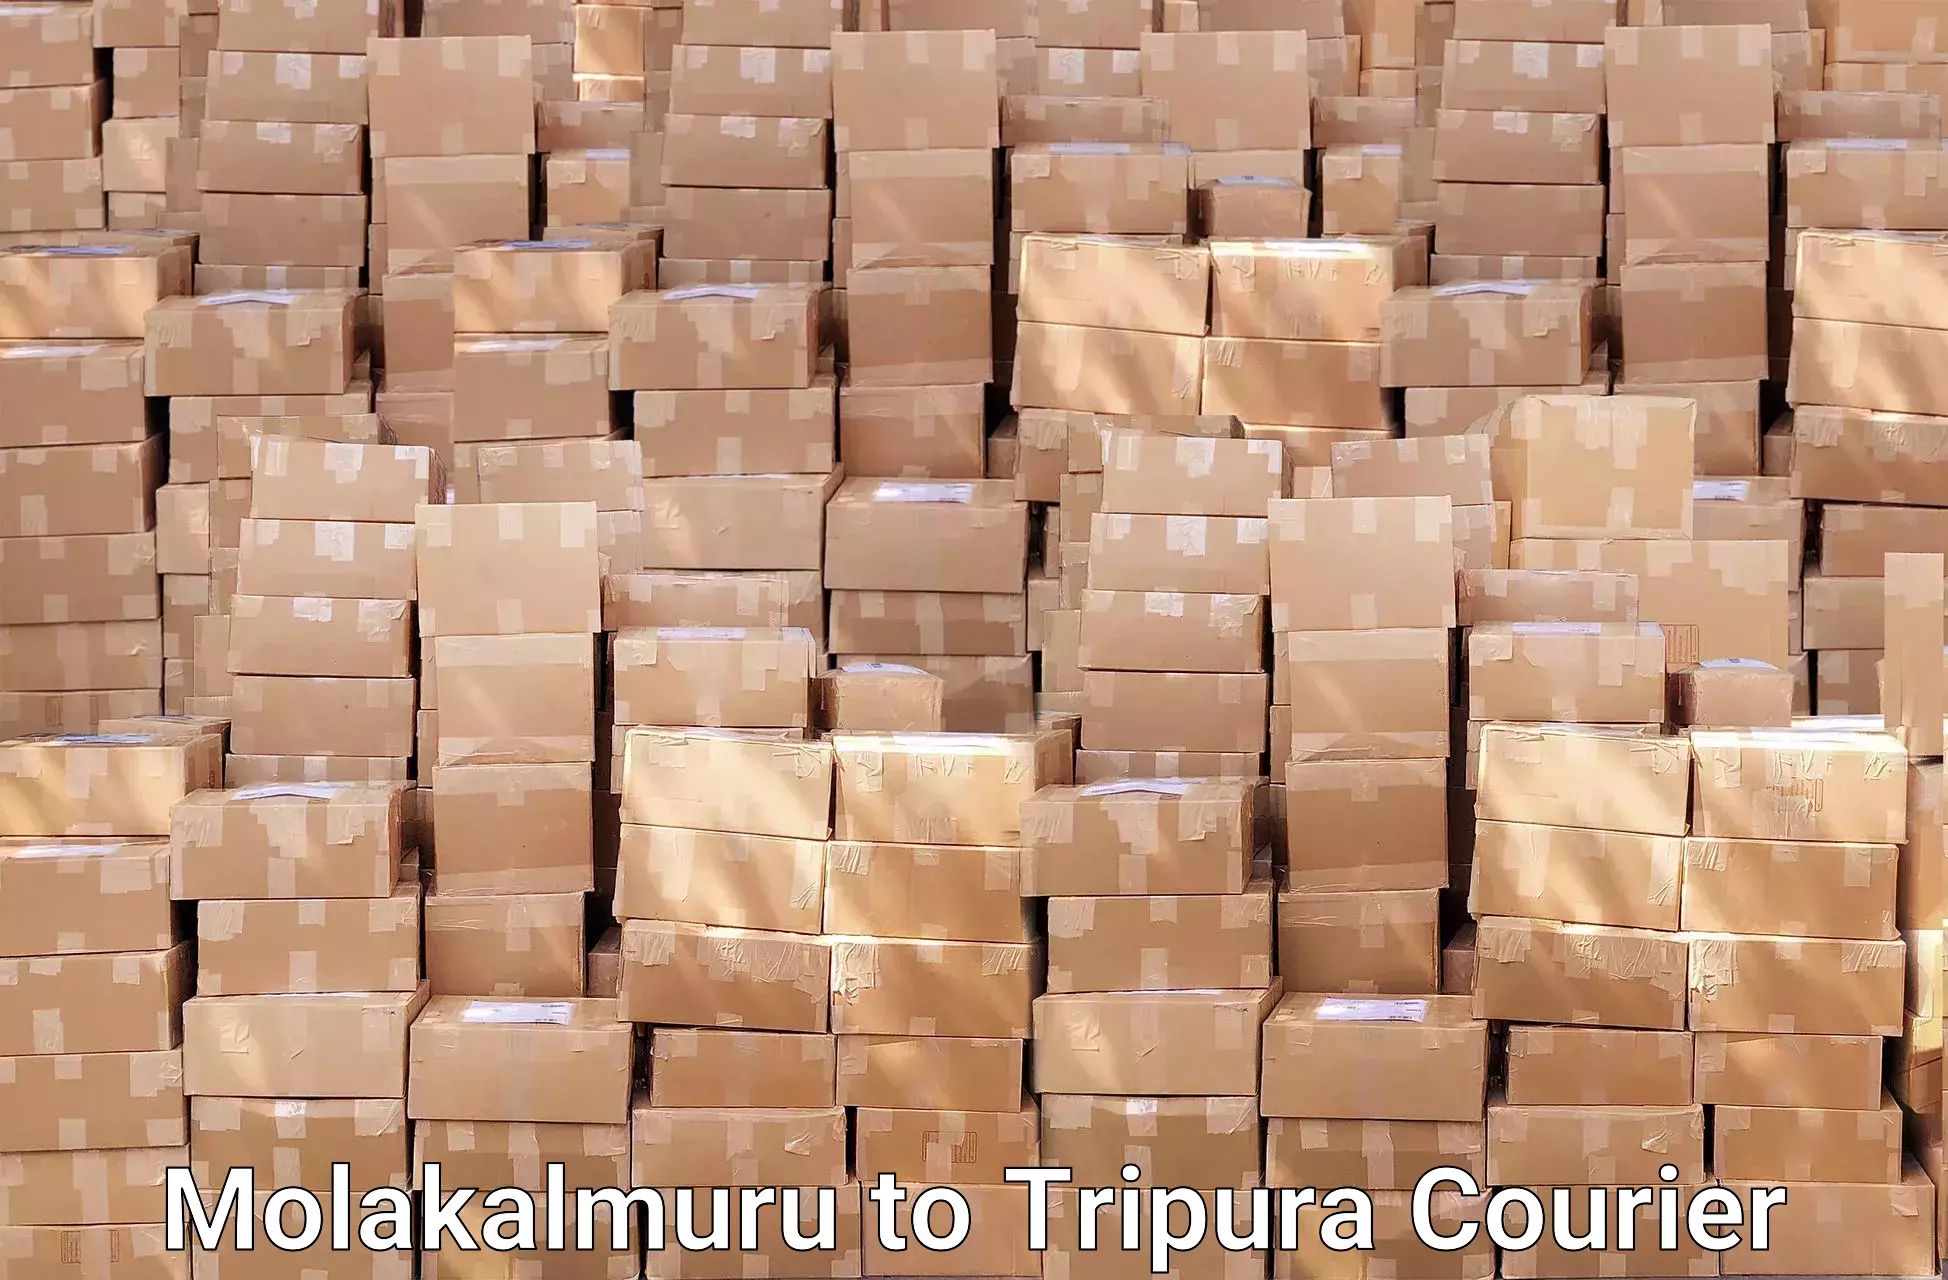 Professional movers Molakalmuru to Tripura